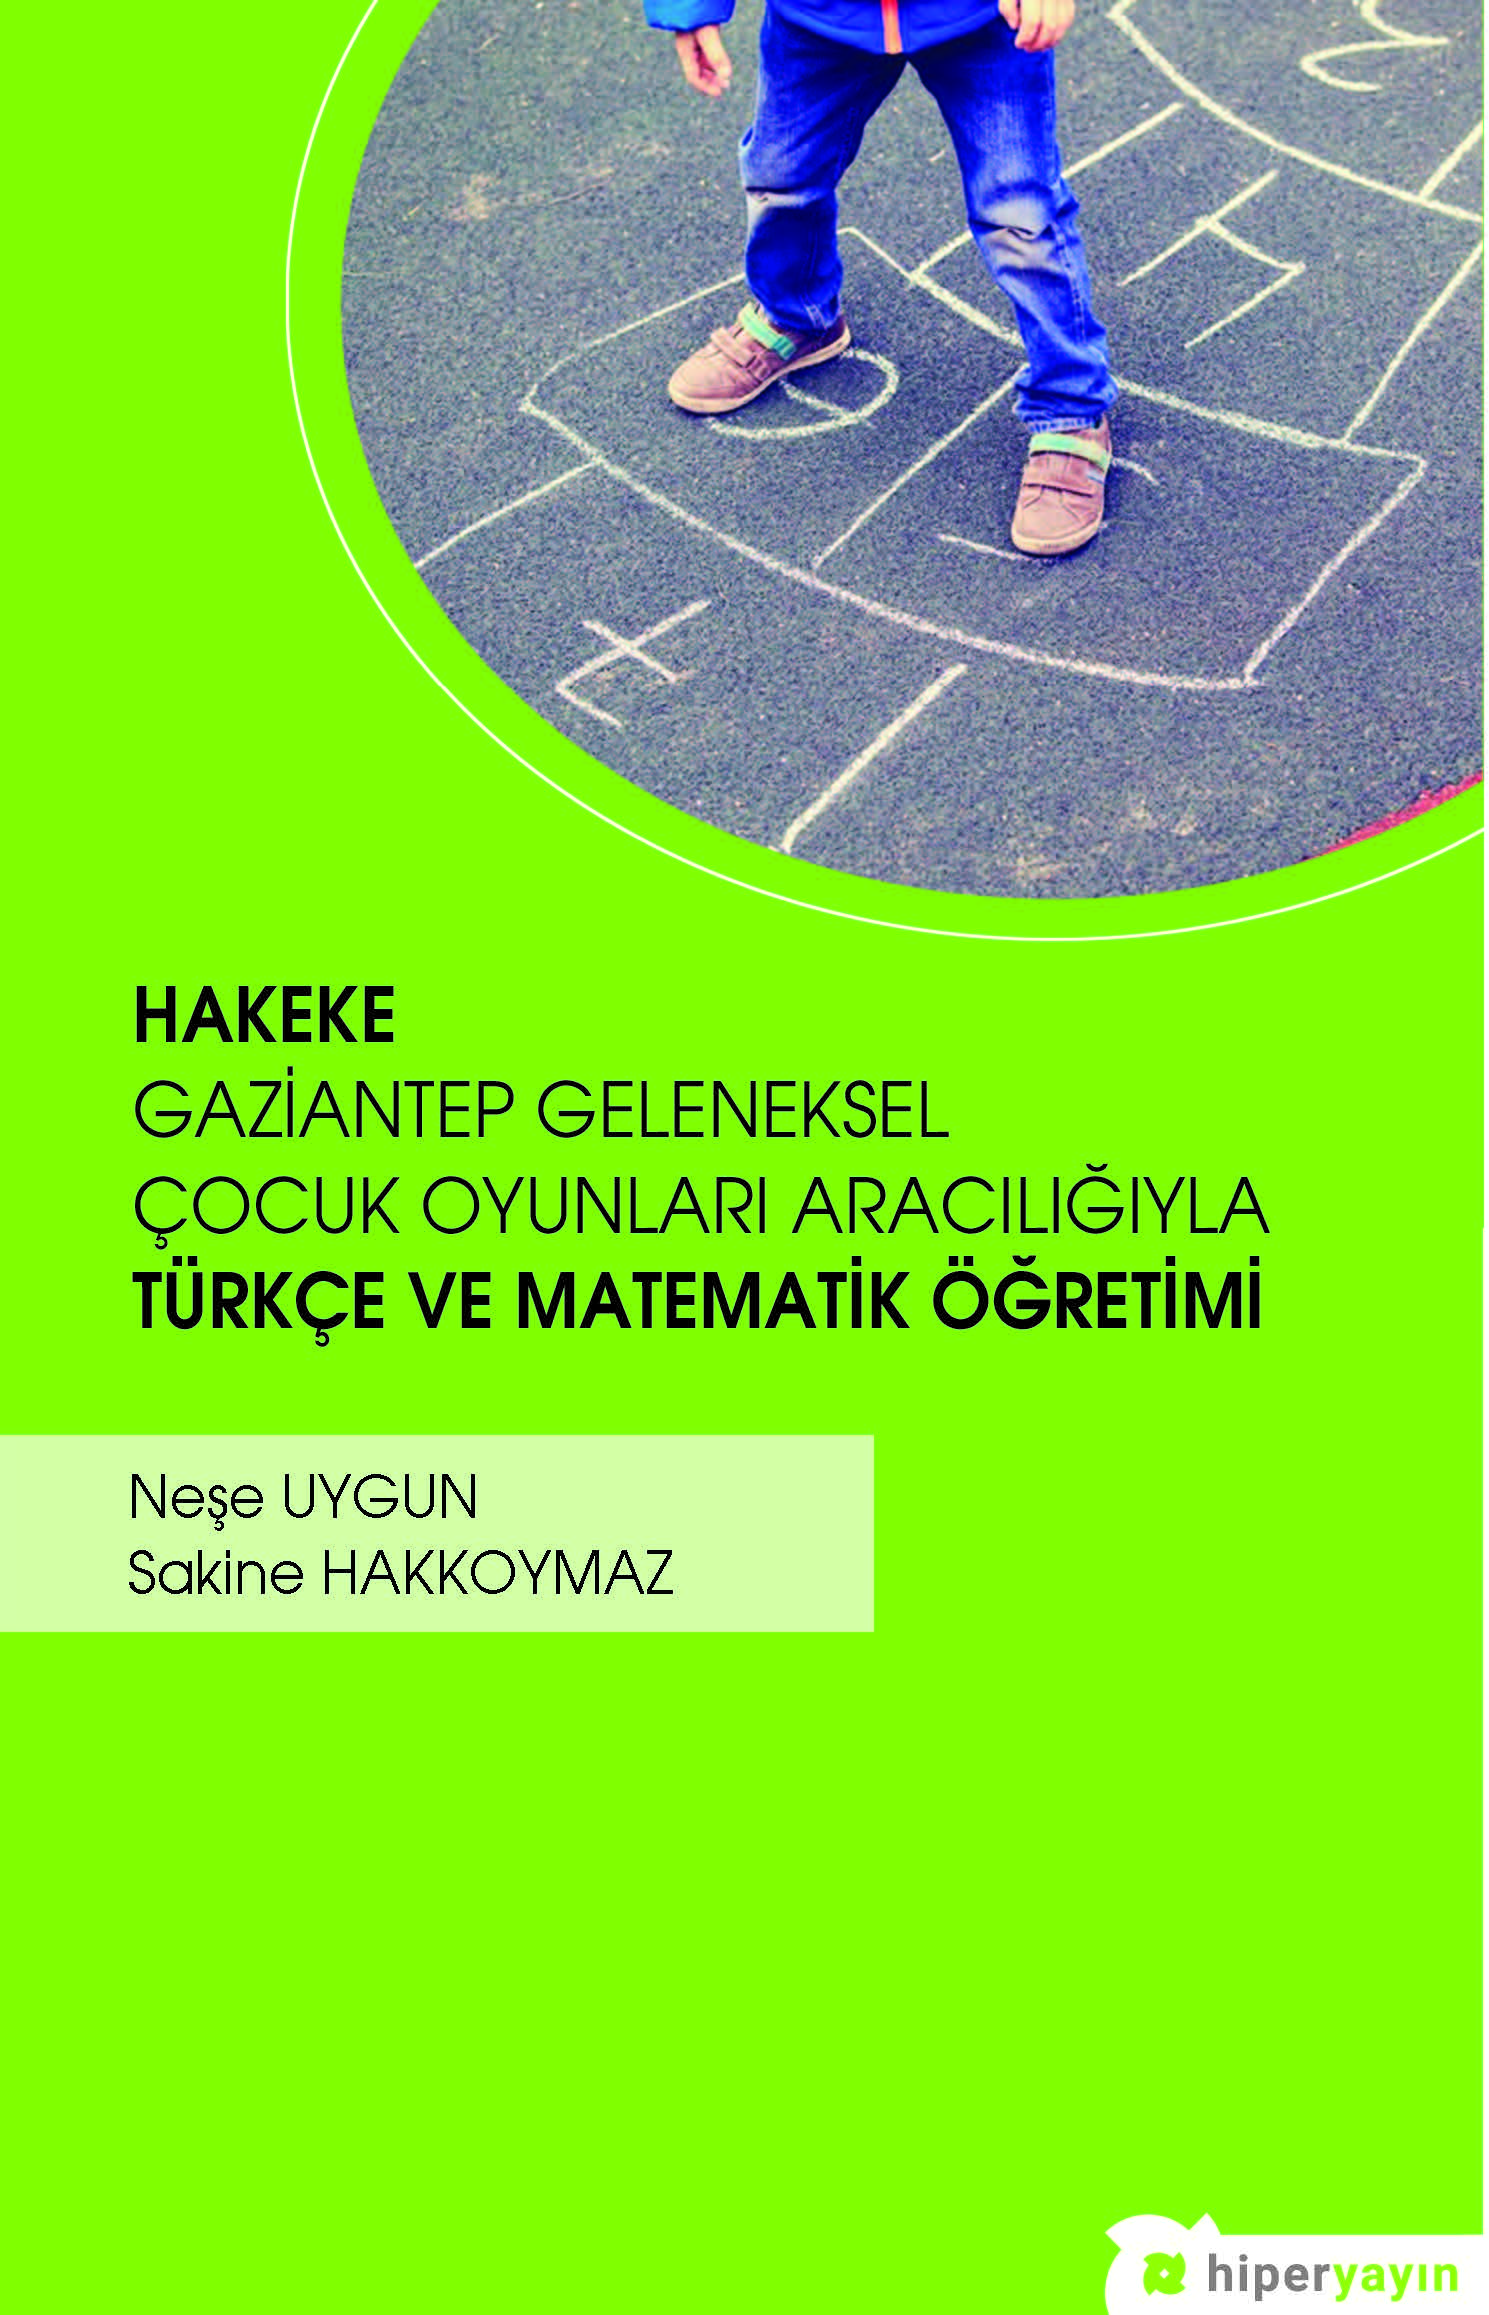 Hakeke : Gaziantep geleneksel çocuk oyunları aracılığıyla Türkçe ve matematik öğretimi